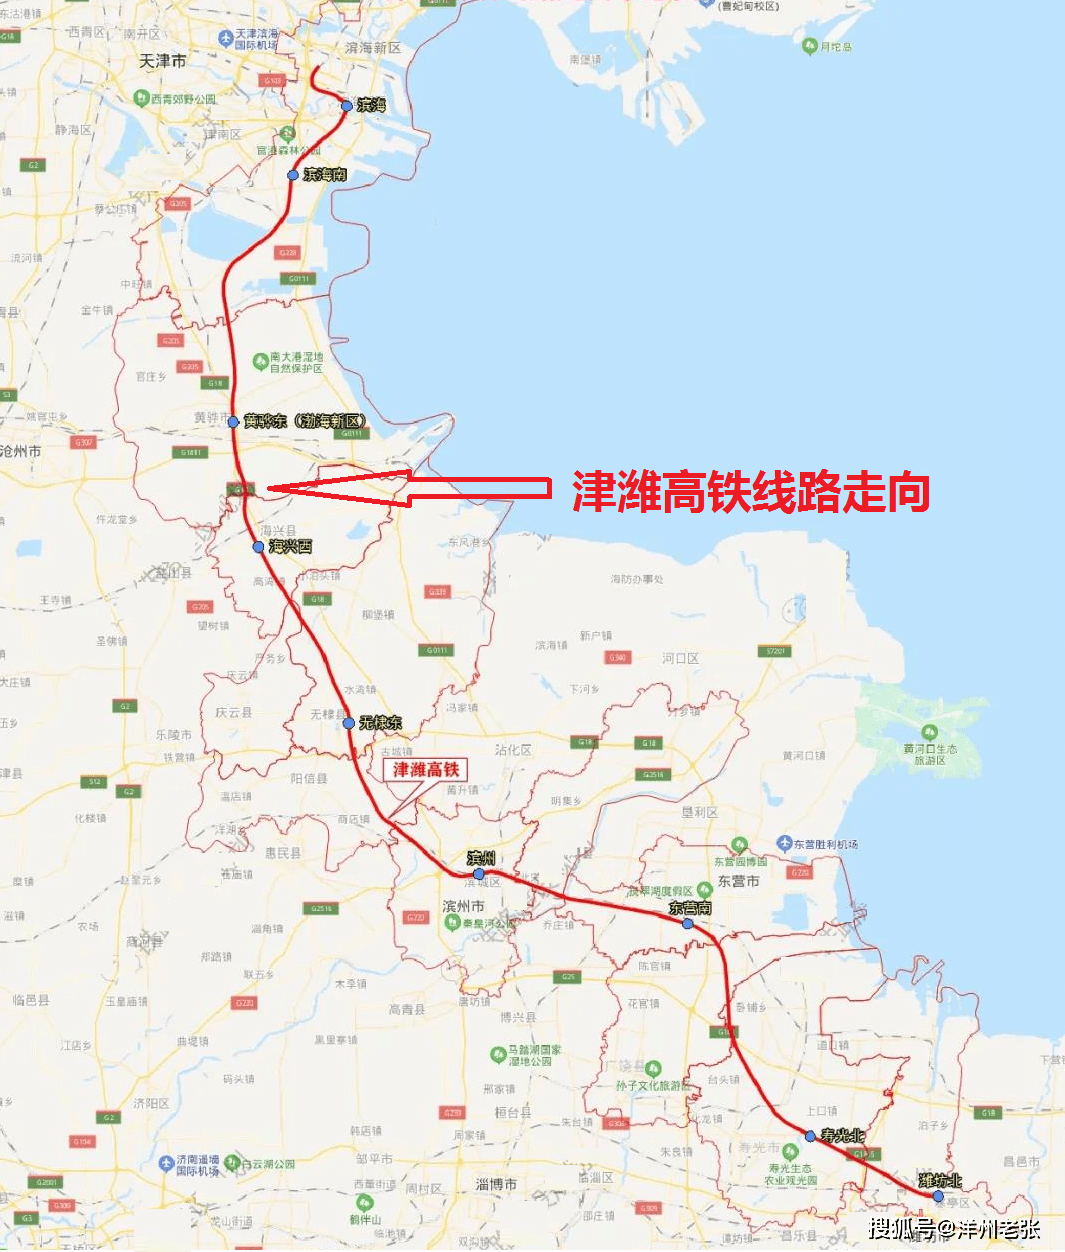 原创时速350公里新高铁即将开建,串联津冀鲁,沿线5市经过你家乡吗?